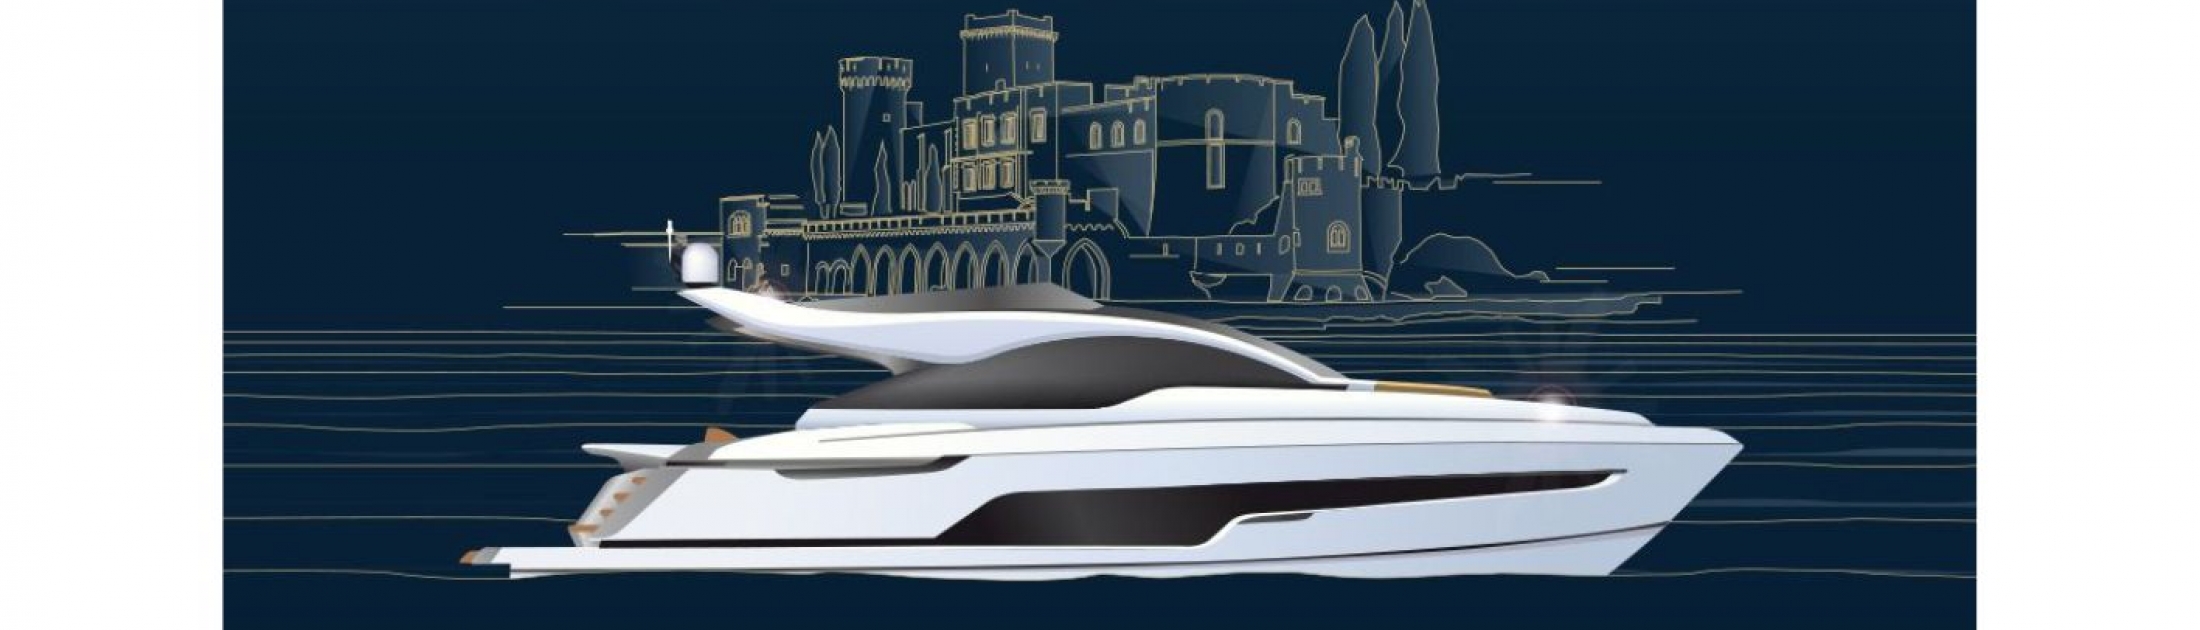 La Napoule Boat Show revient pour une 32ème édition : Technic Marine sera présent ! 